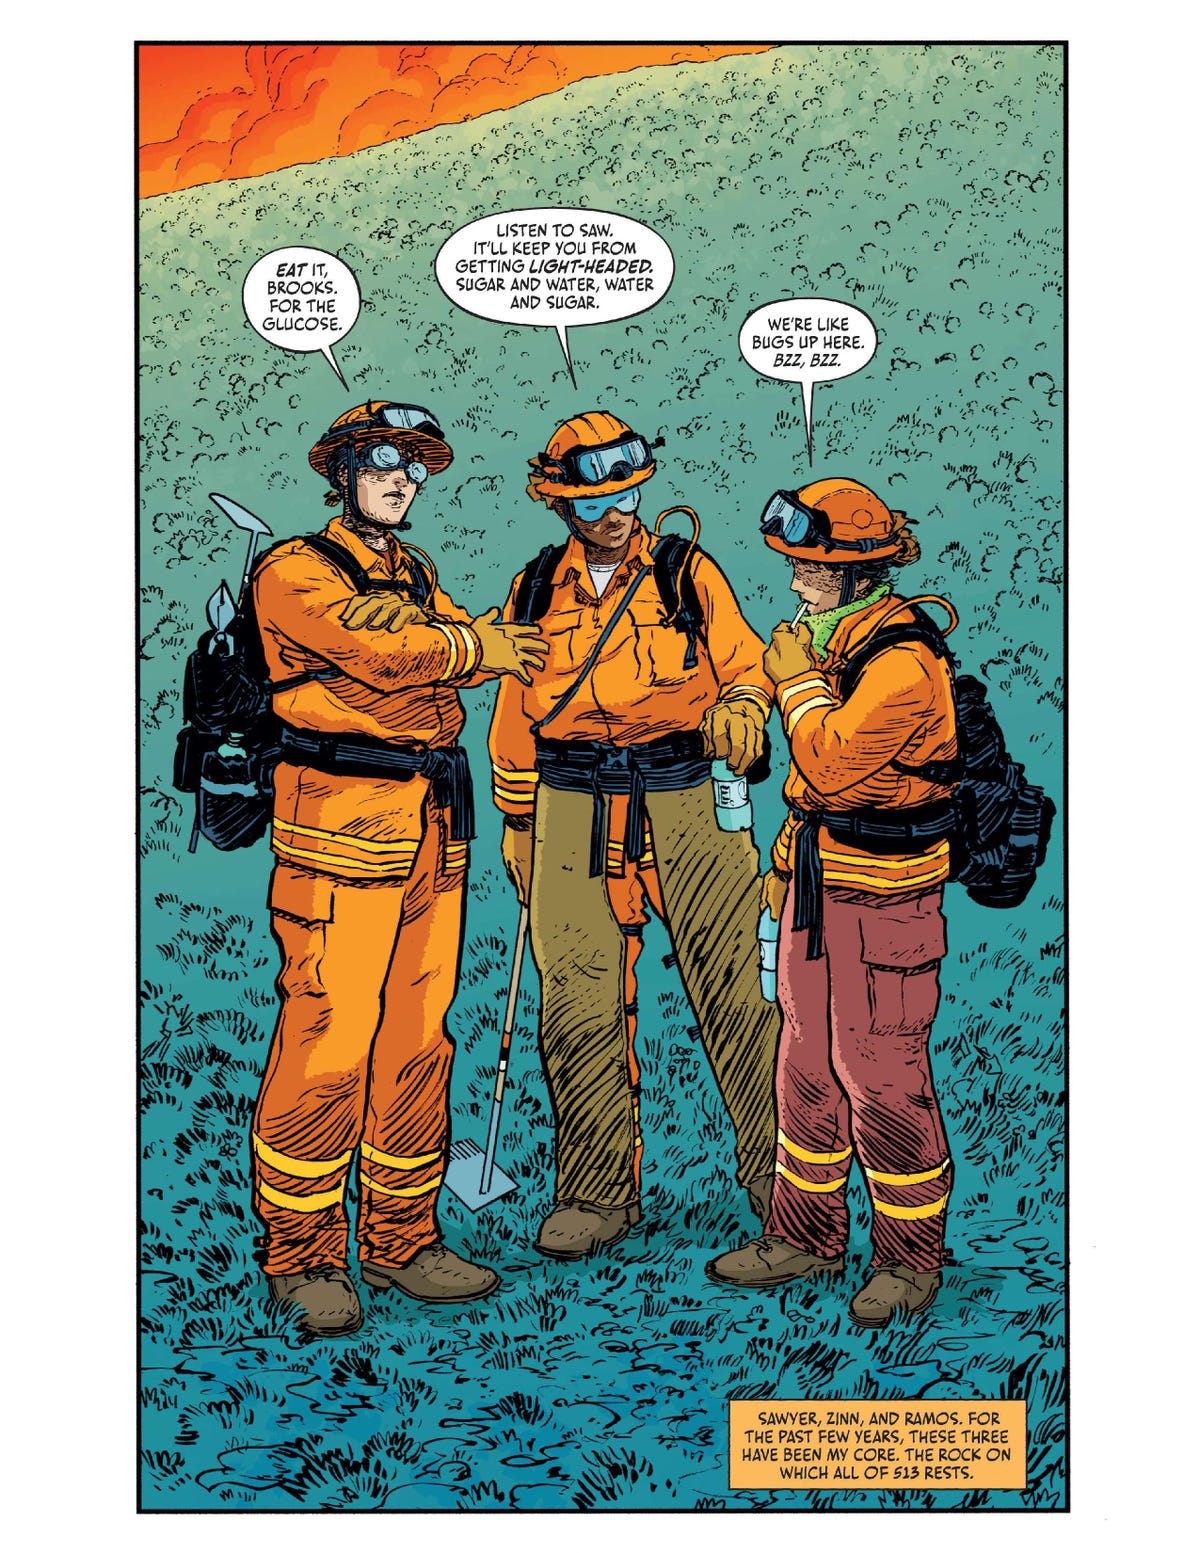 Comic page of three women in firefighter gear, talking